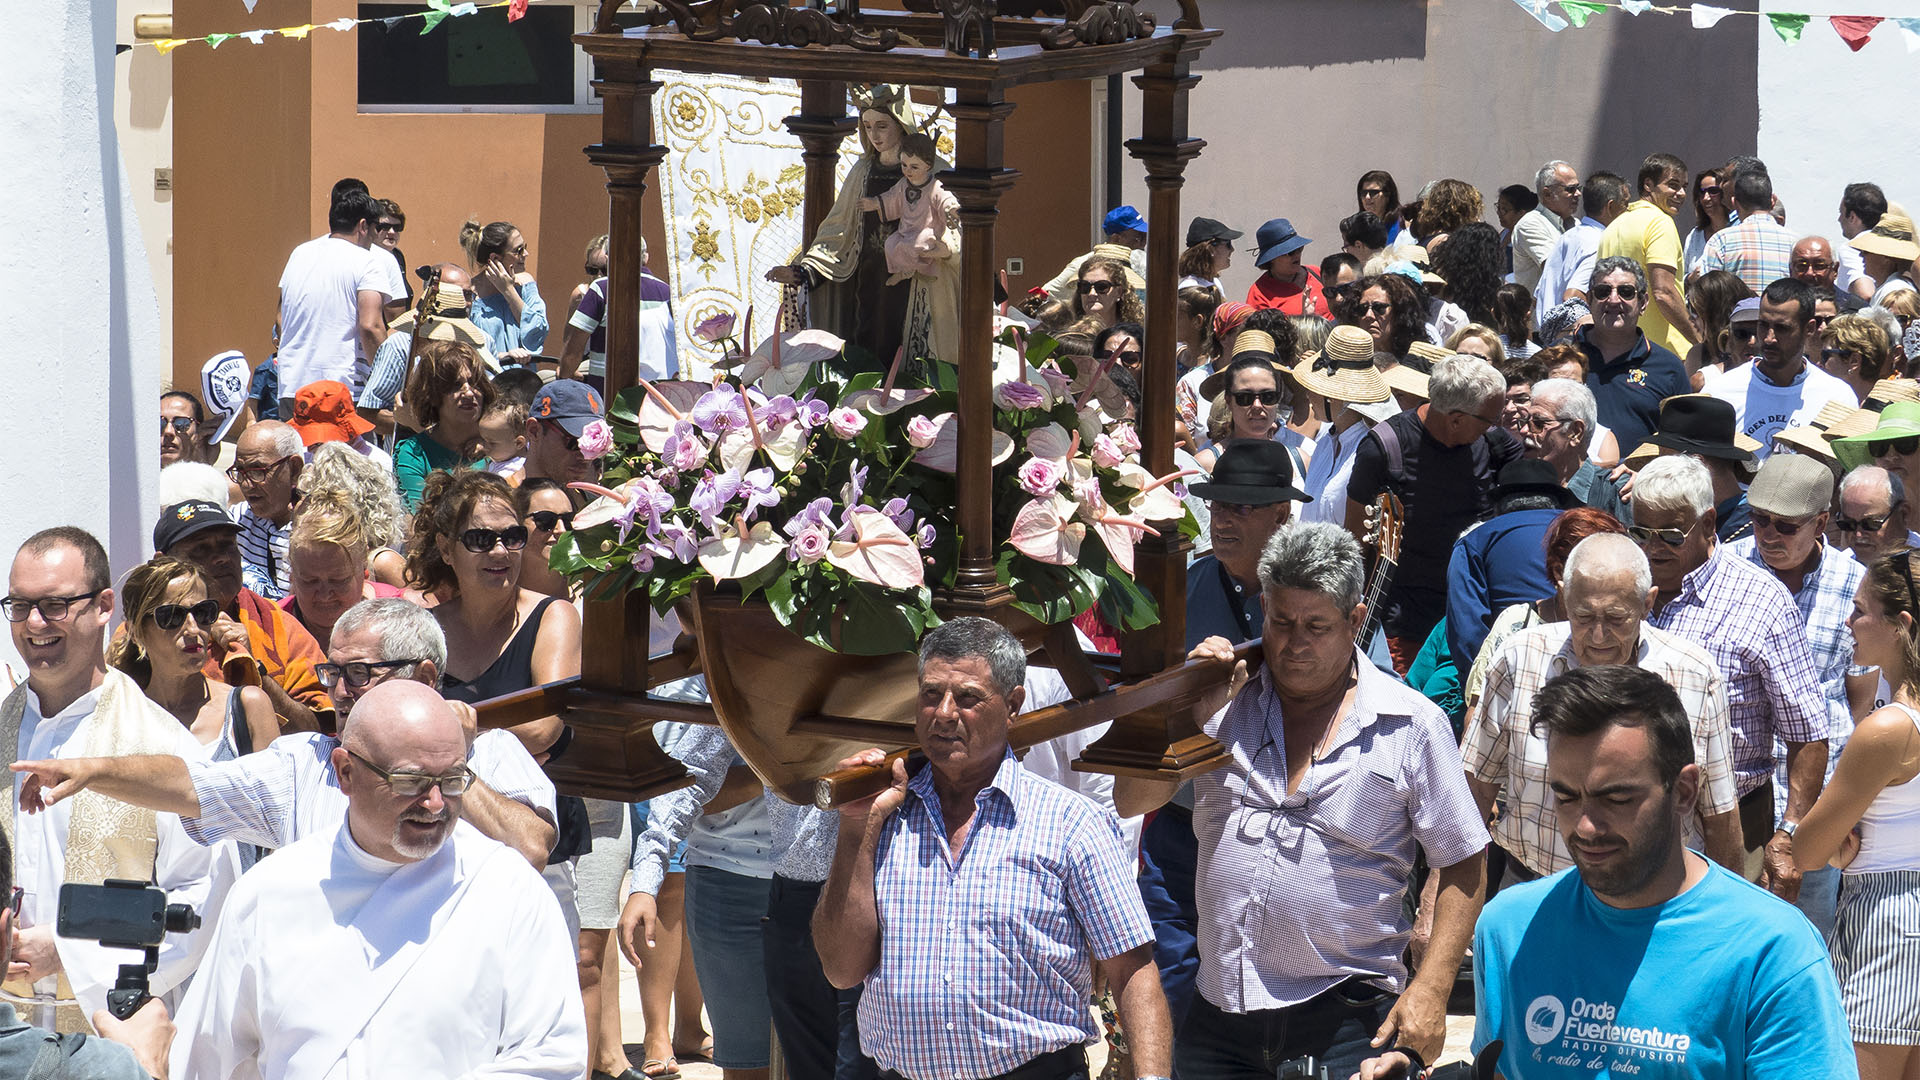 Die Fiesta Nuestra Señora del Carmen Corralejo Fuerteventura.